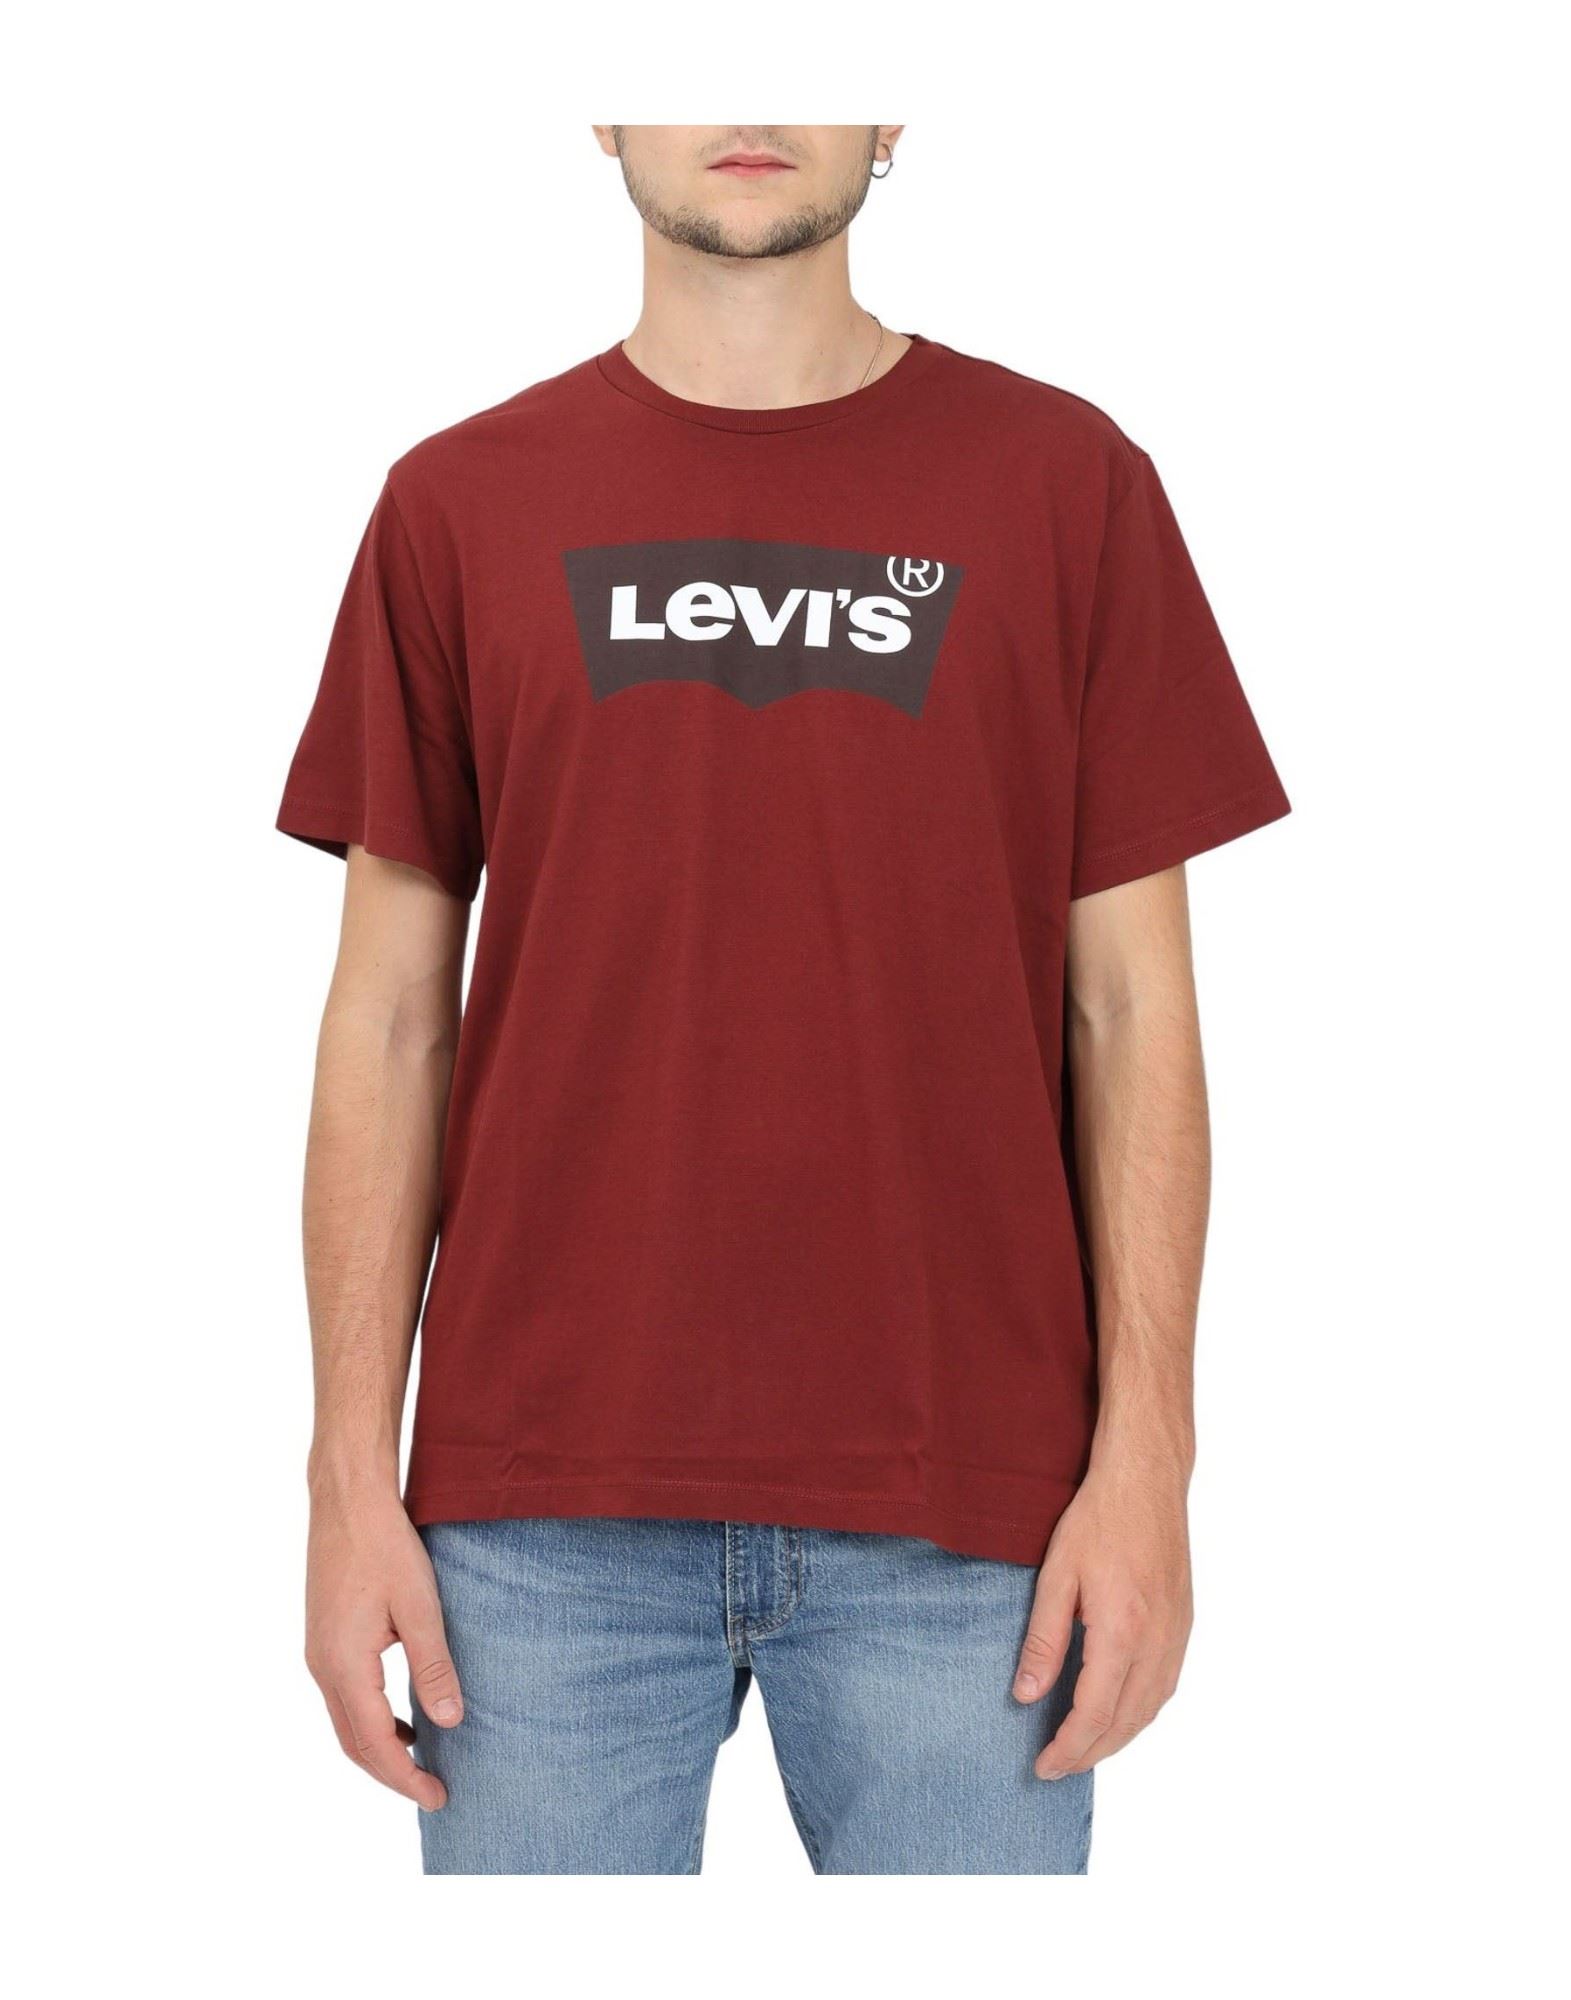 LEVI'S T-shirts Herren Ziegelrot von LEVI'S